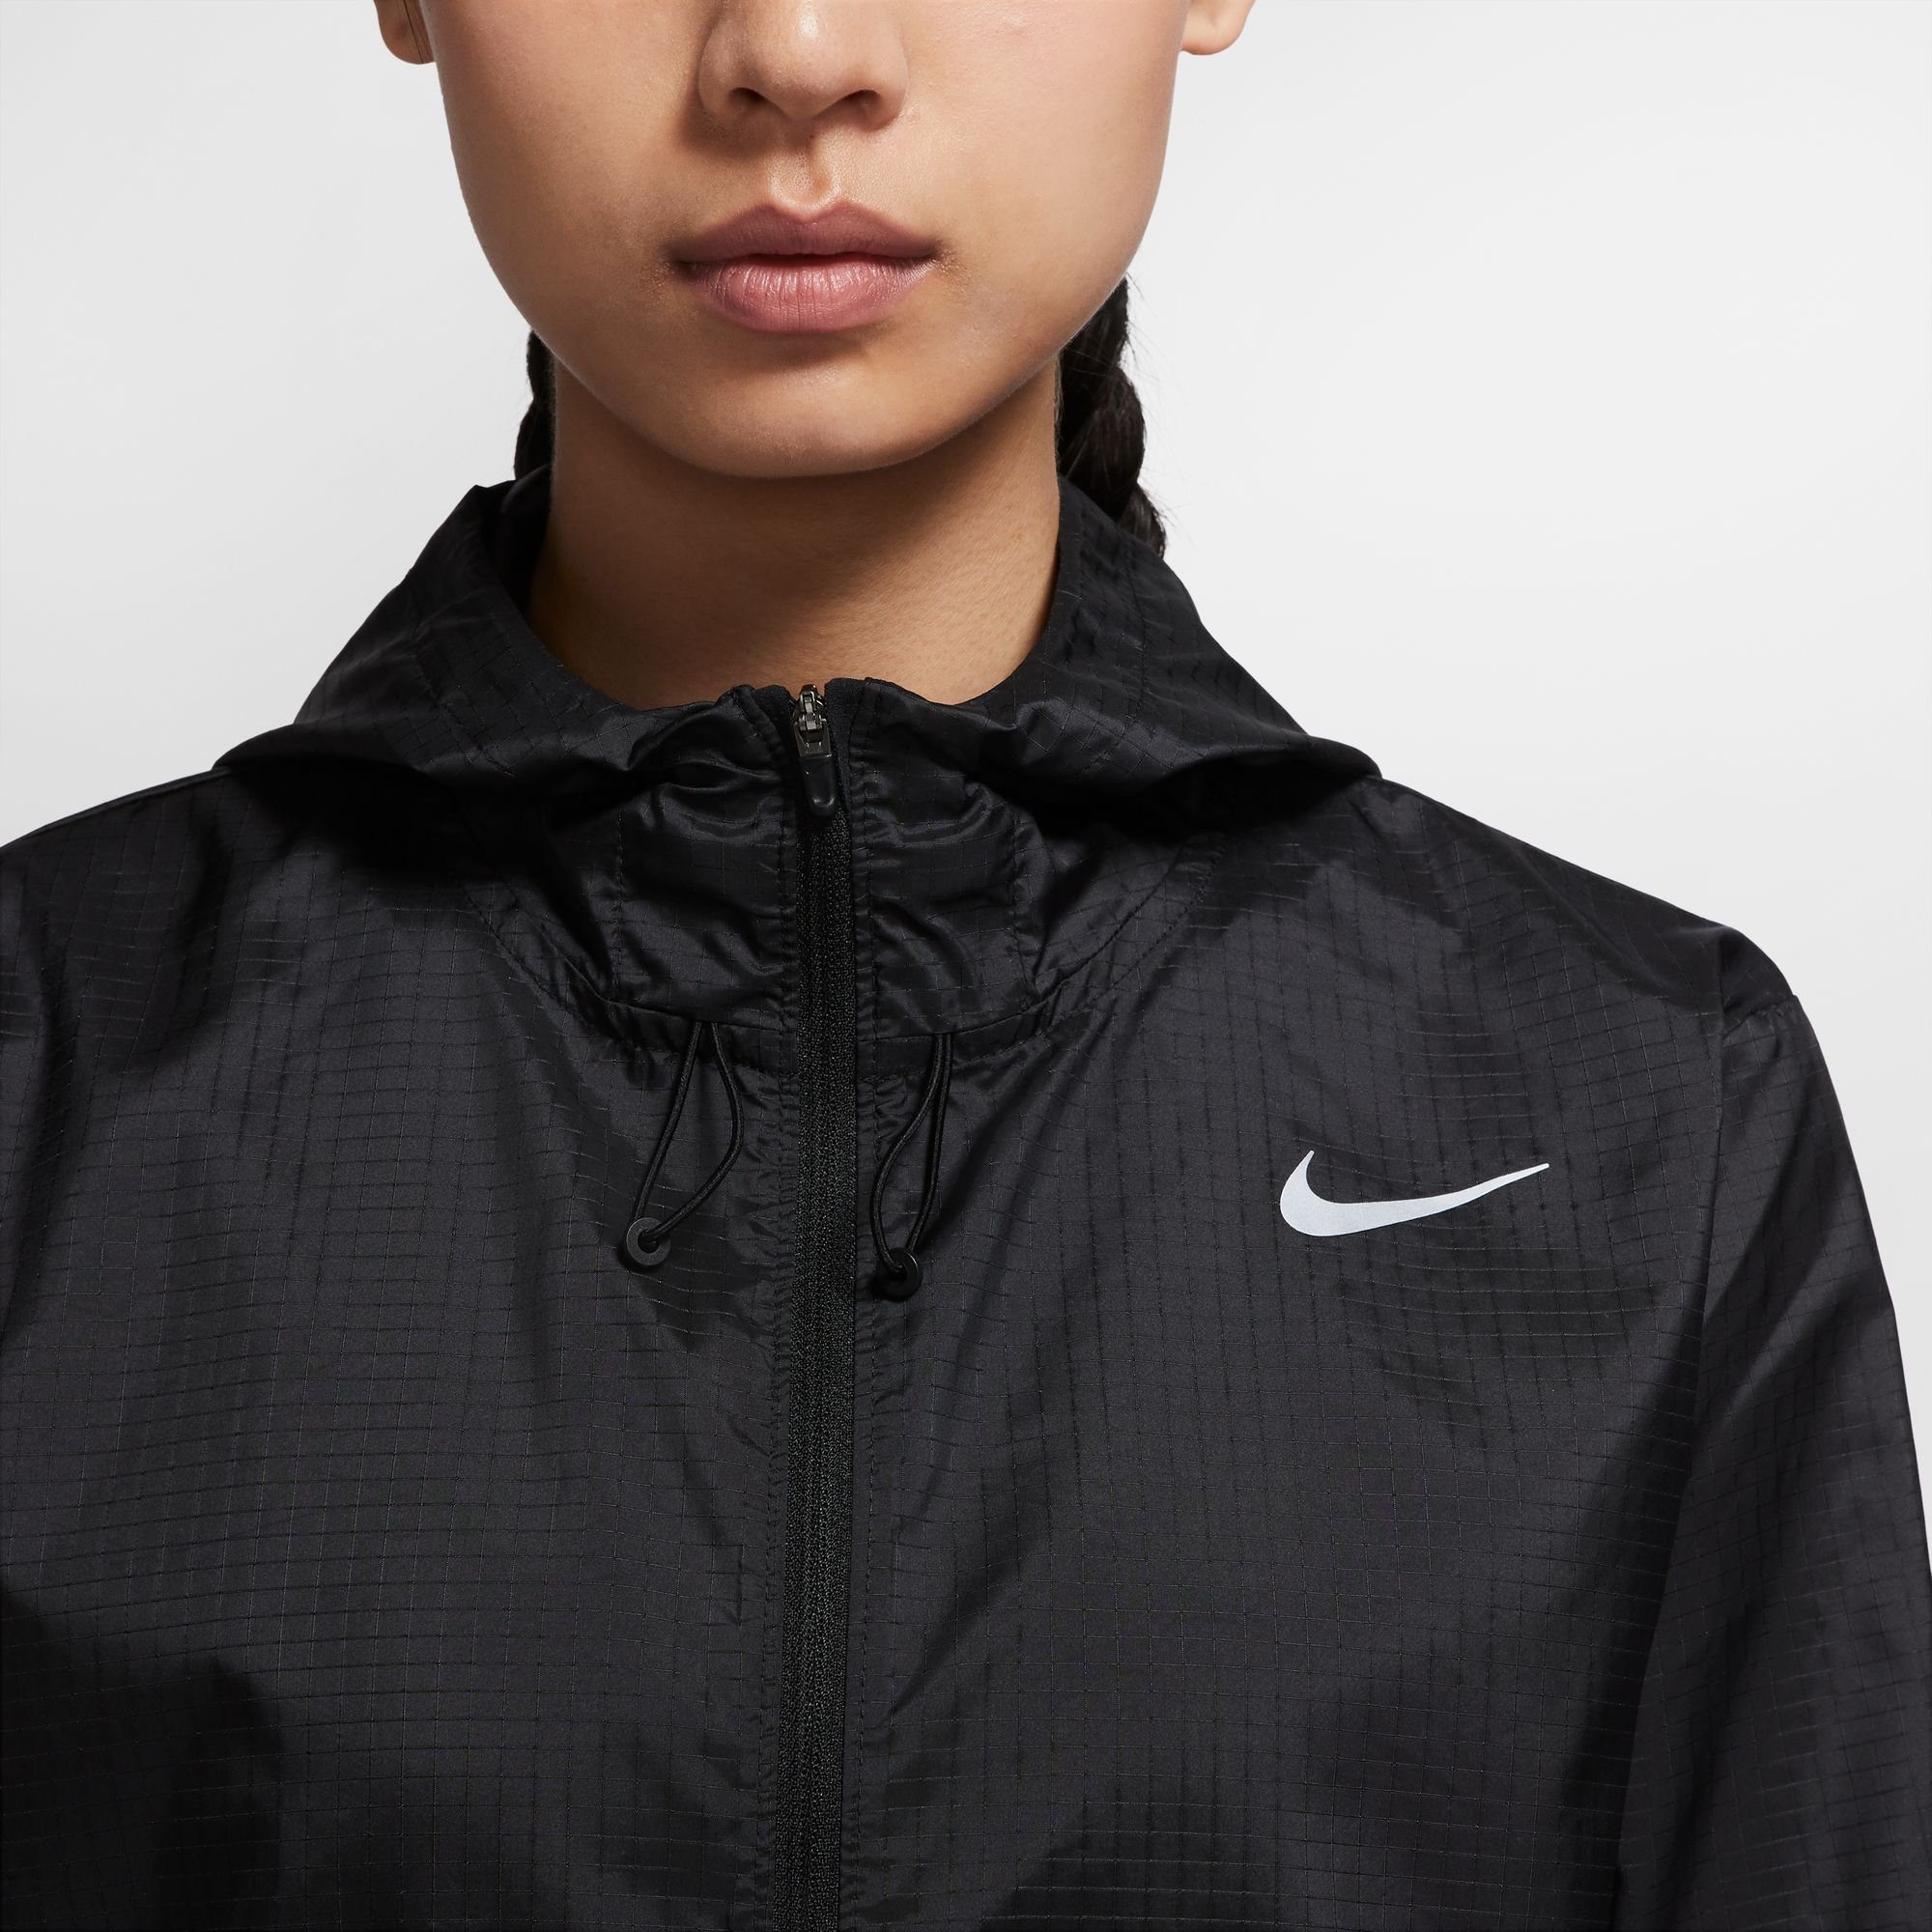 Essential Women's Laufjacke Running schwarz Jacket Nike